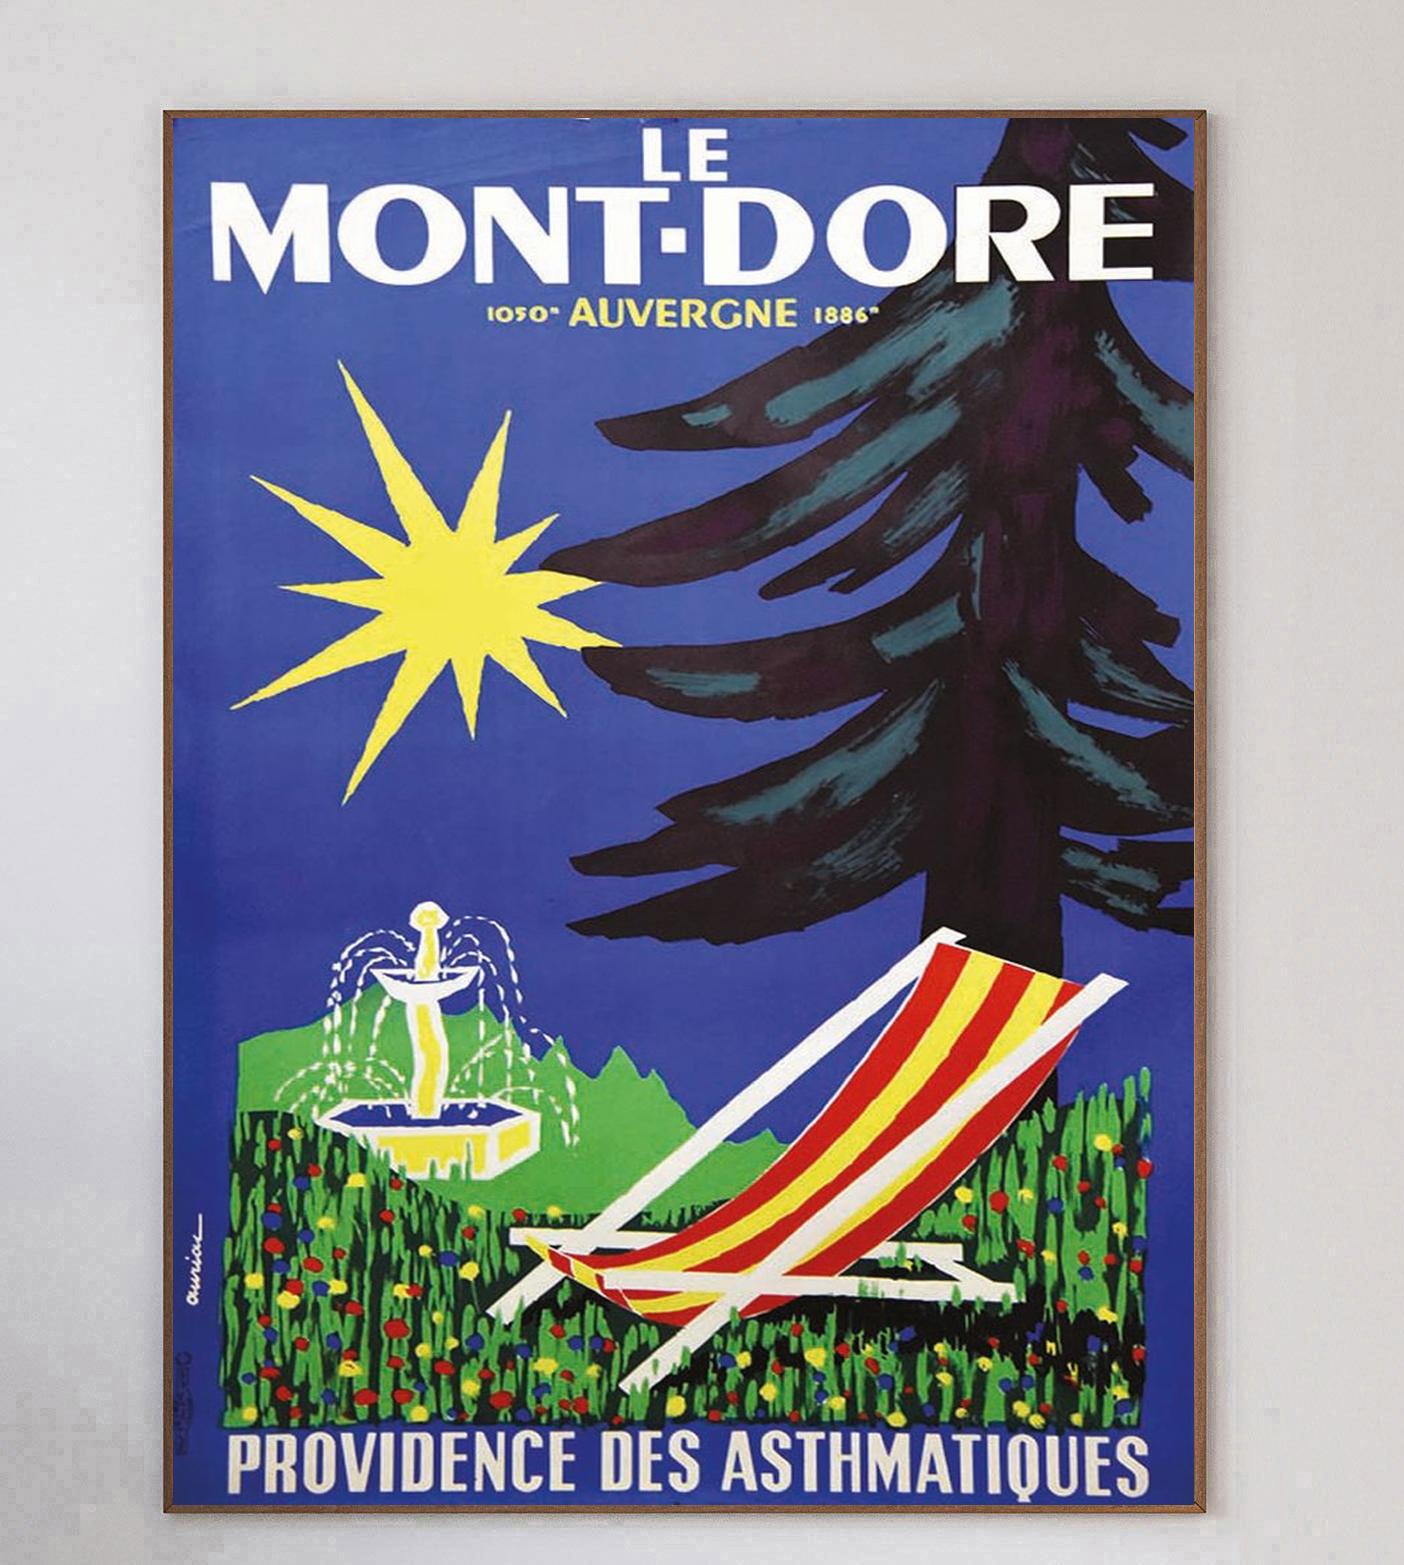 Avec une fabuleuse illustration du grand affichiste français Jacques Auriac, cette belle  L'affiche a été créée en 1950 pour faire la publicité de la région du Monte-Dore, en Auvergne-Rhône-Alpes, dans le centre de la France.

Représentant une